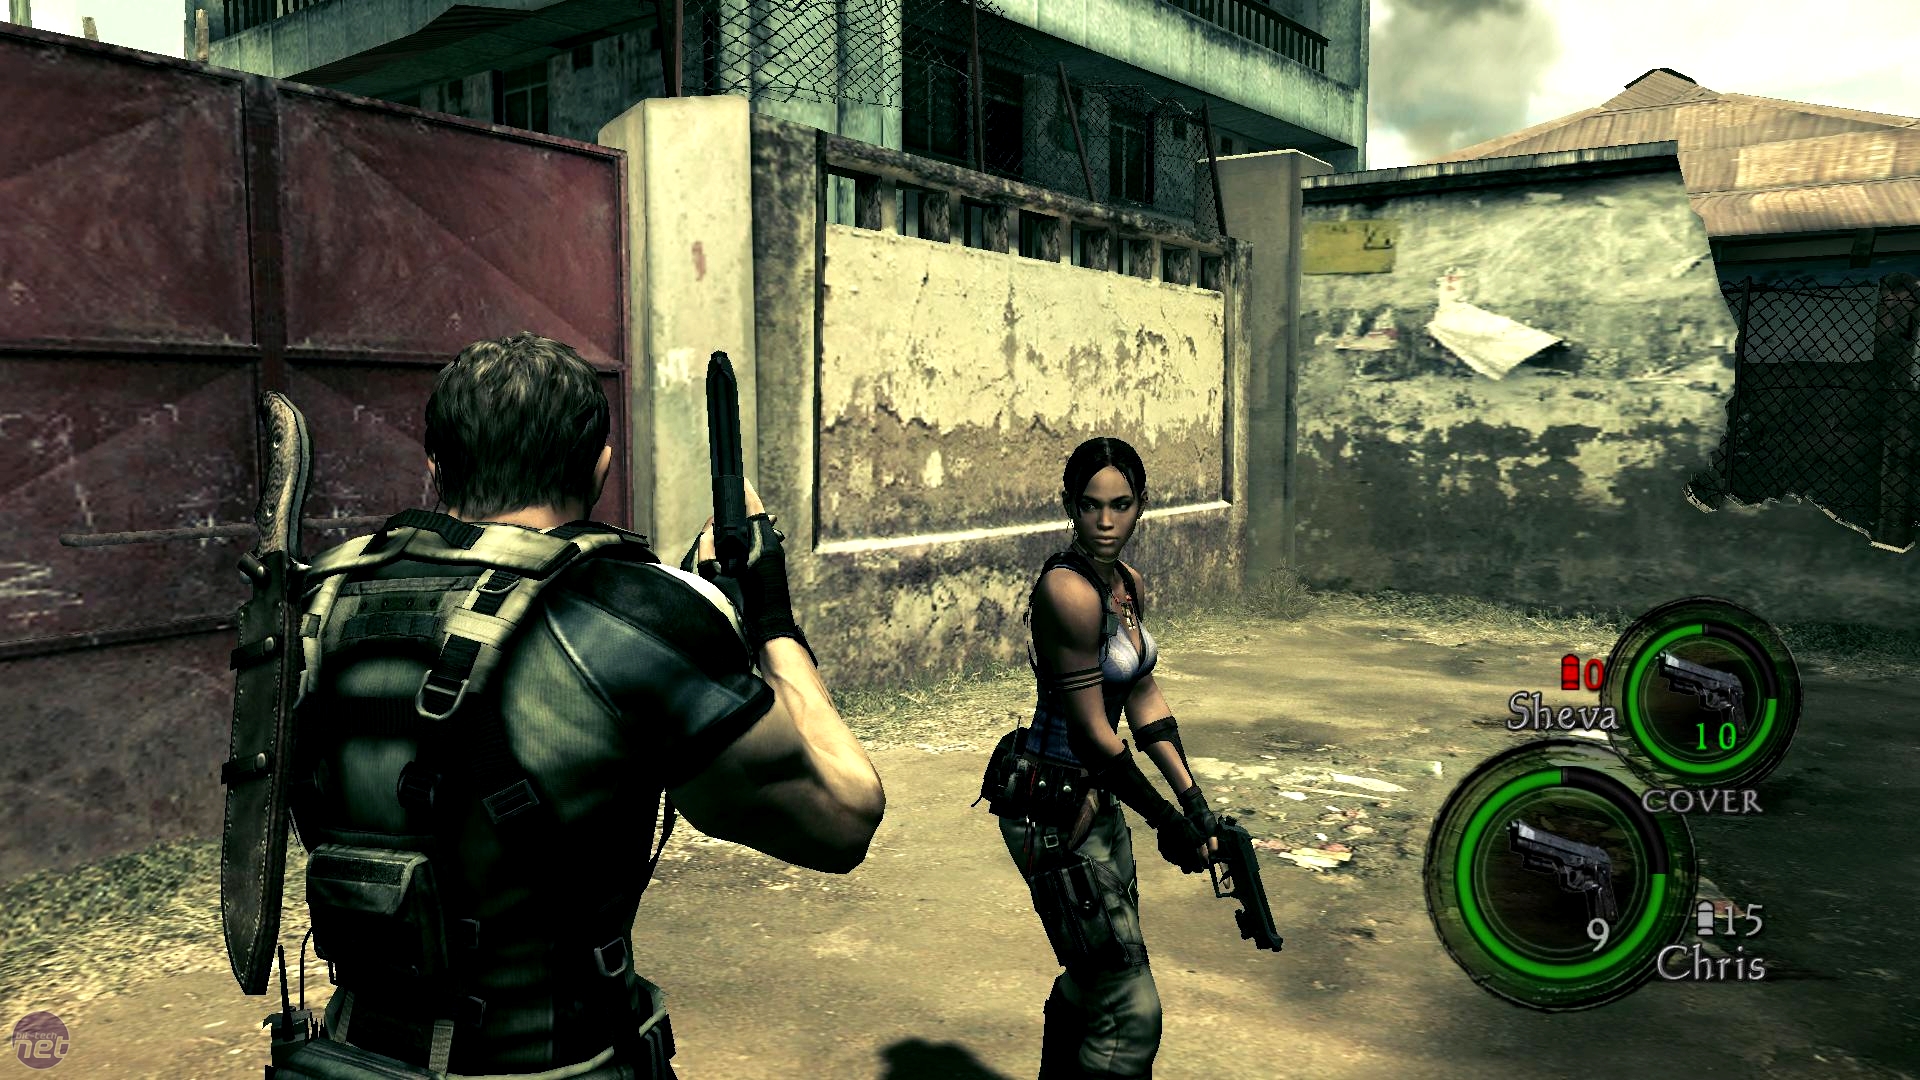 Resident Evil 5/ Biohazard 5 on Steam